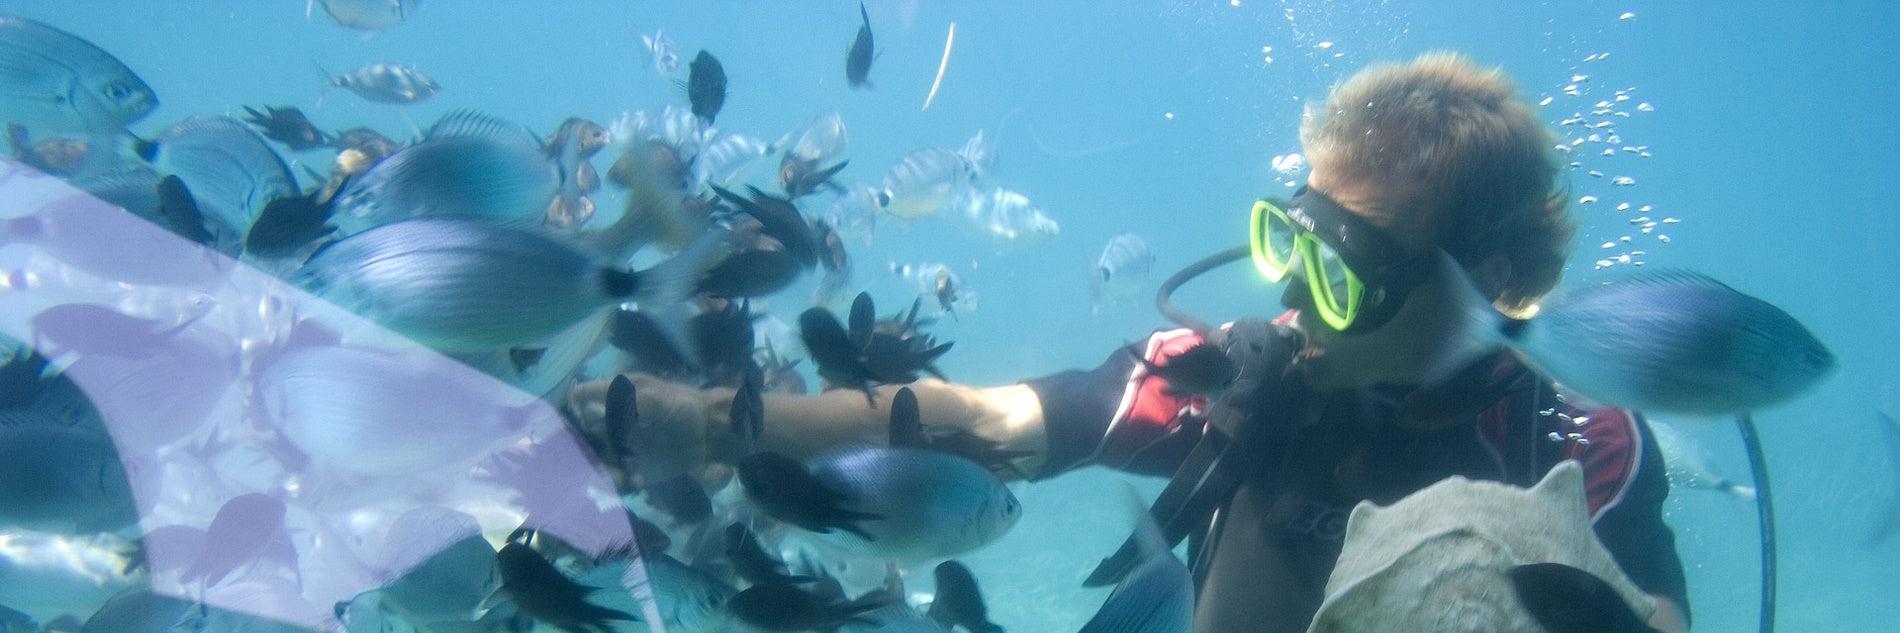 Testimonial Blog: Best Waterproof Bag for Snorkeling